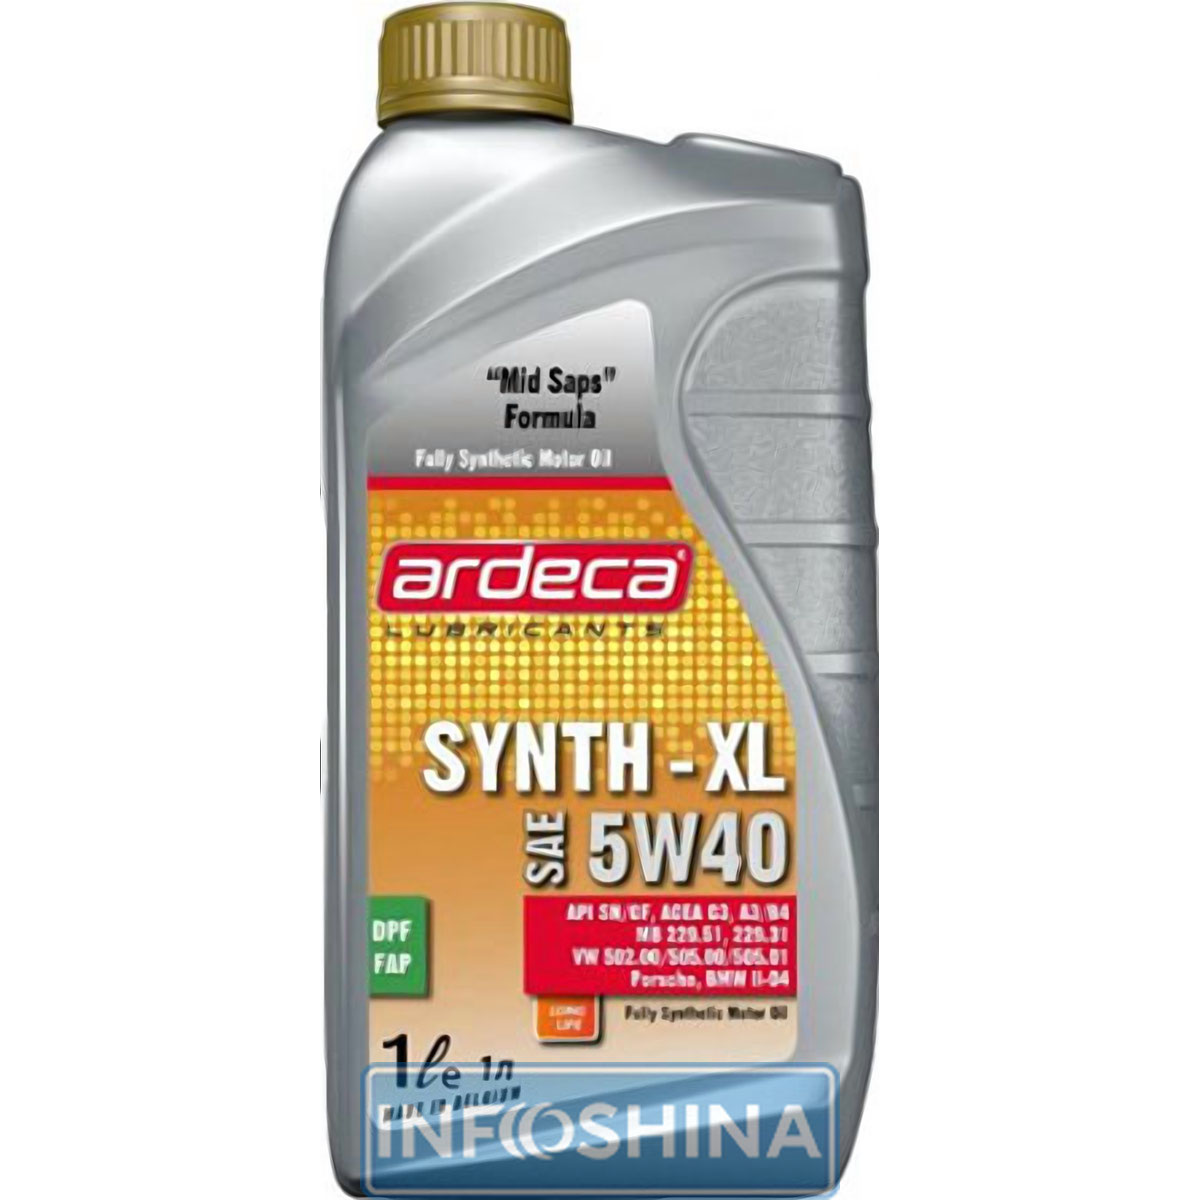 Ardeca SYNTH-XL 5W-40